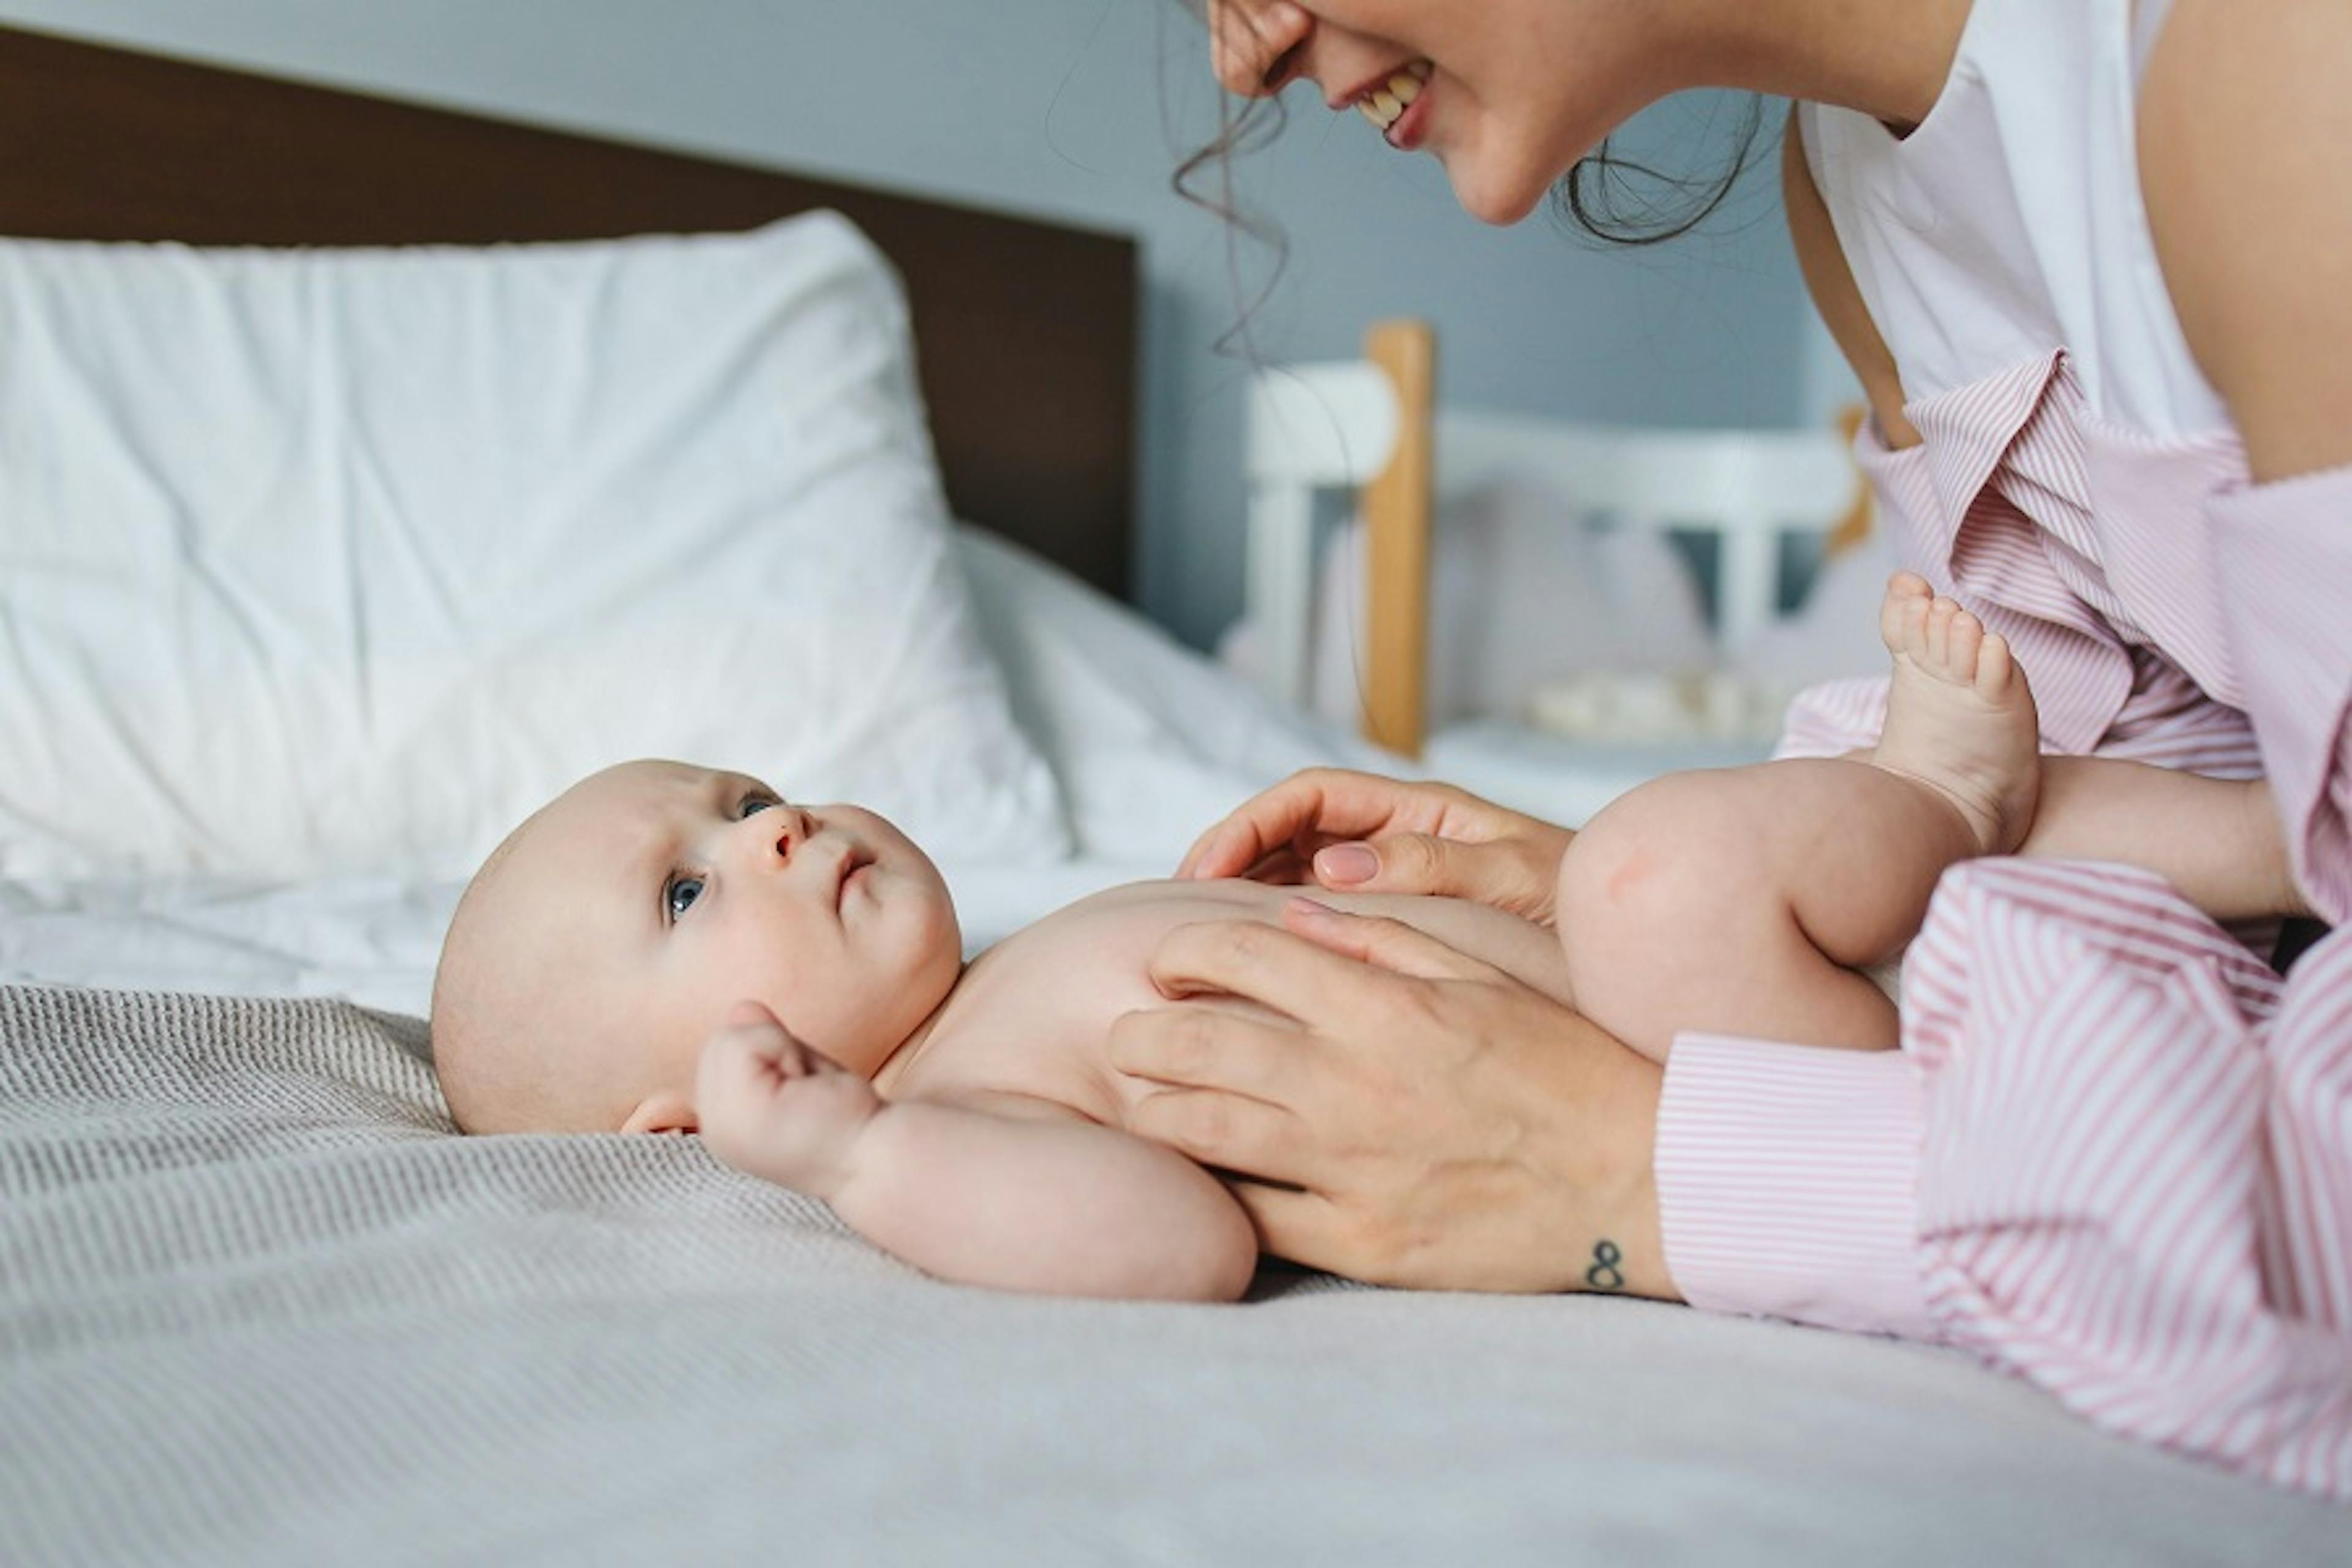 Colental, kojenecké koliky u
novorozenců a kojenců, bolestíi bříška, nadýmáním a neklid